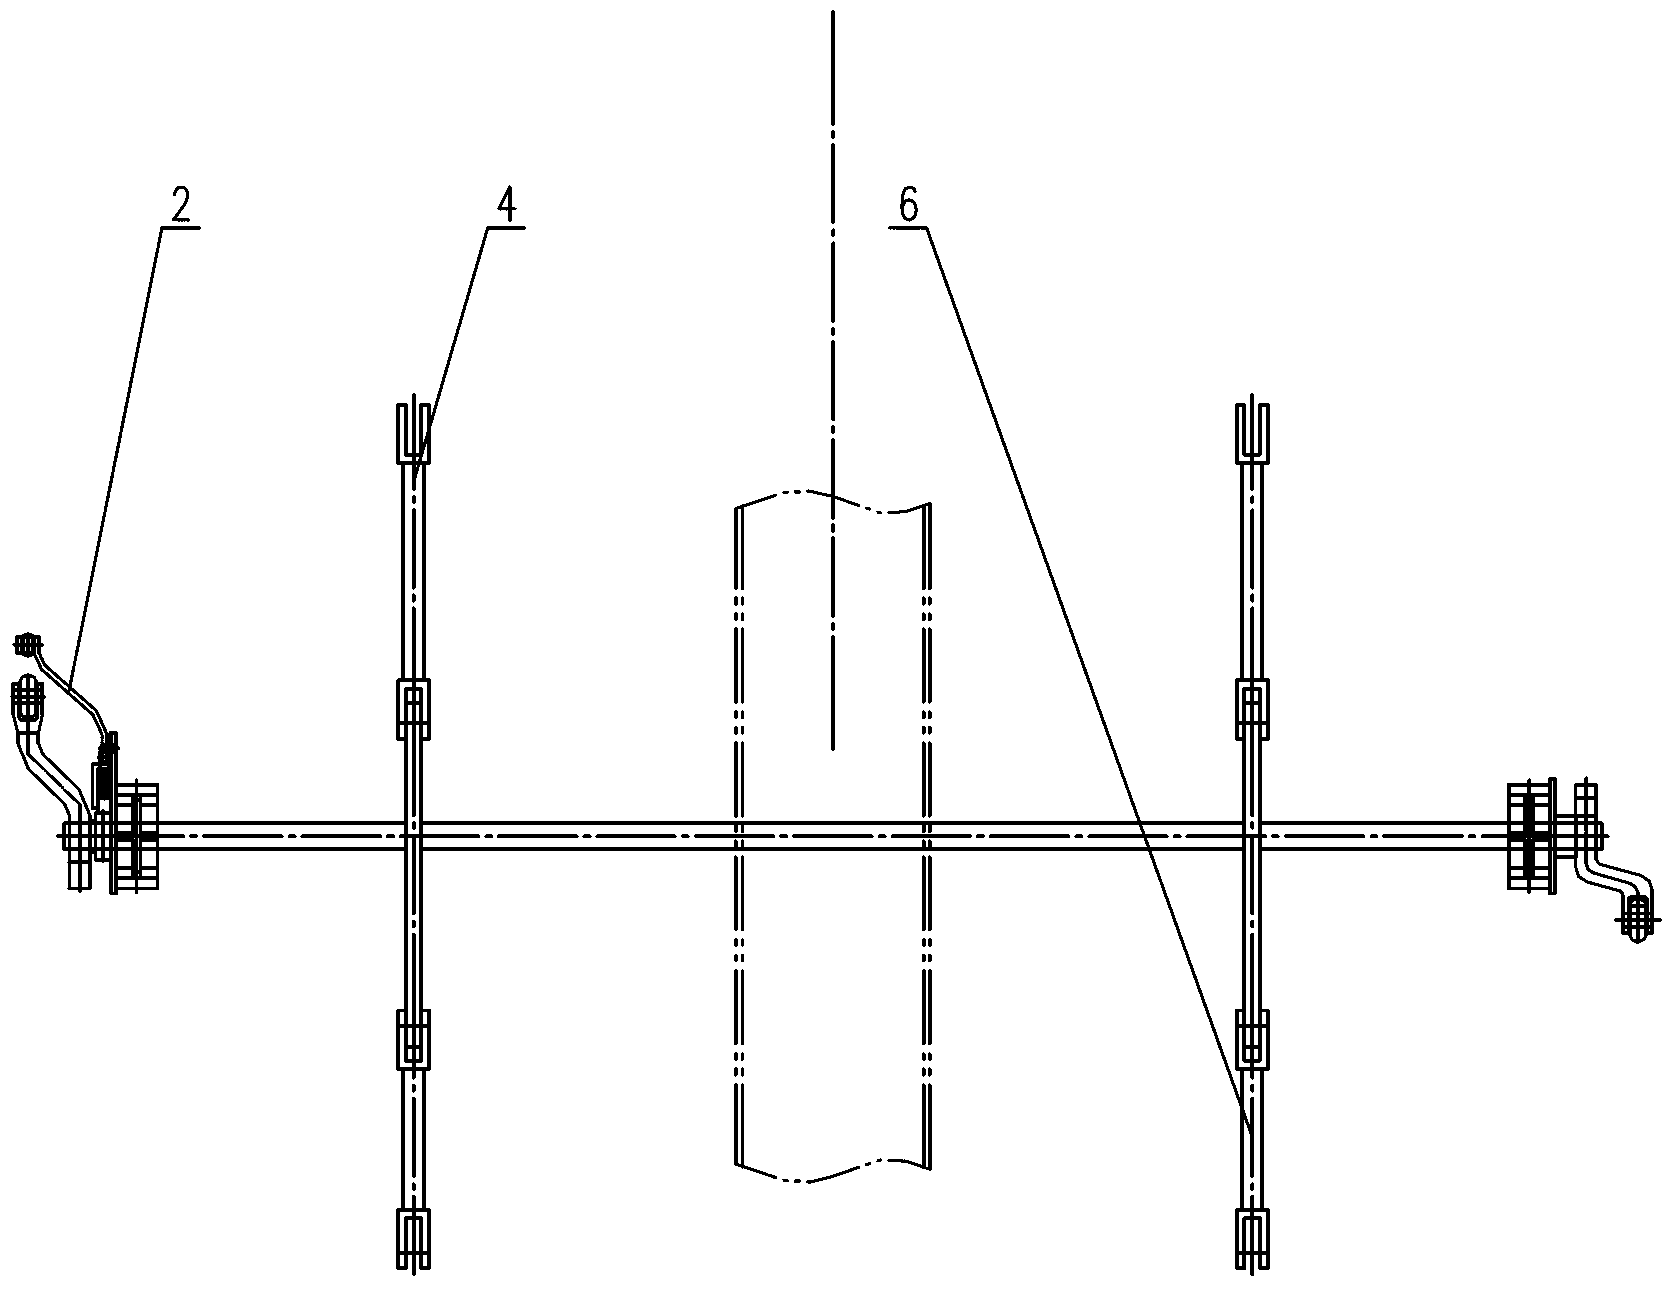 Bottom door opening-closing mechanism for railway funnel type goods vehicle